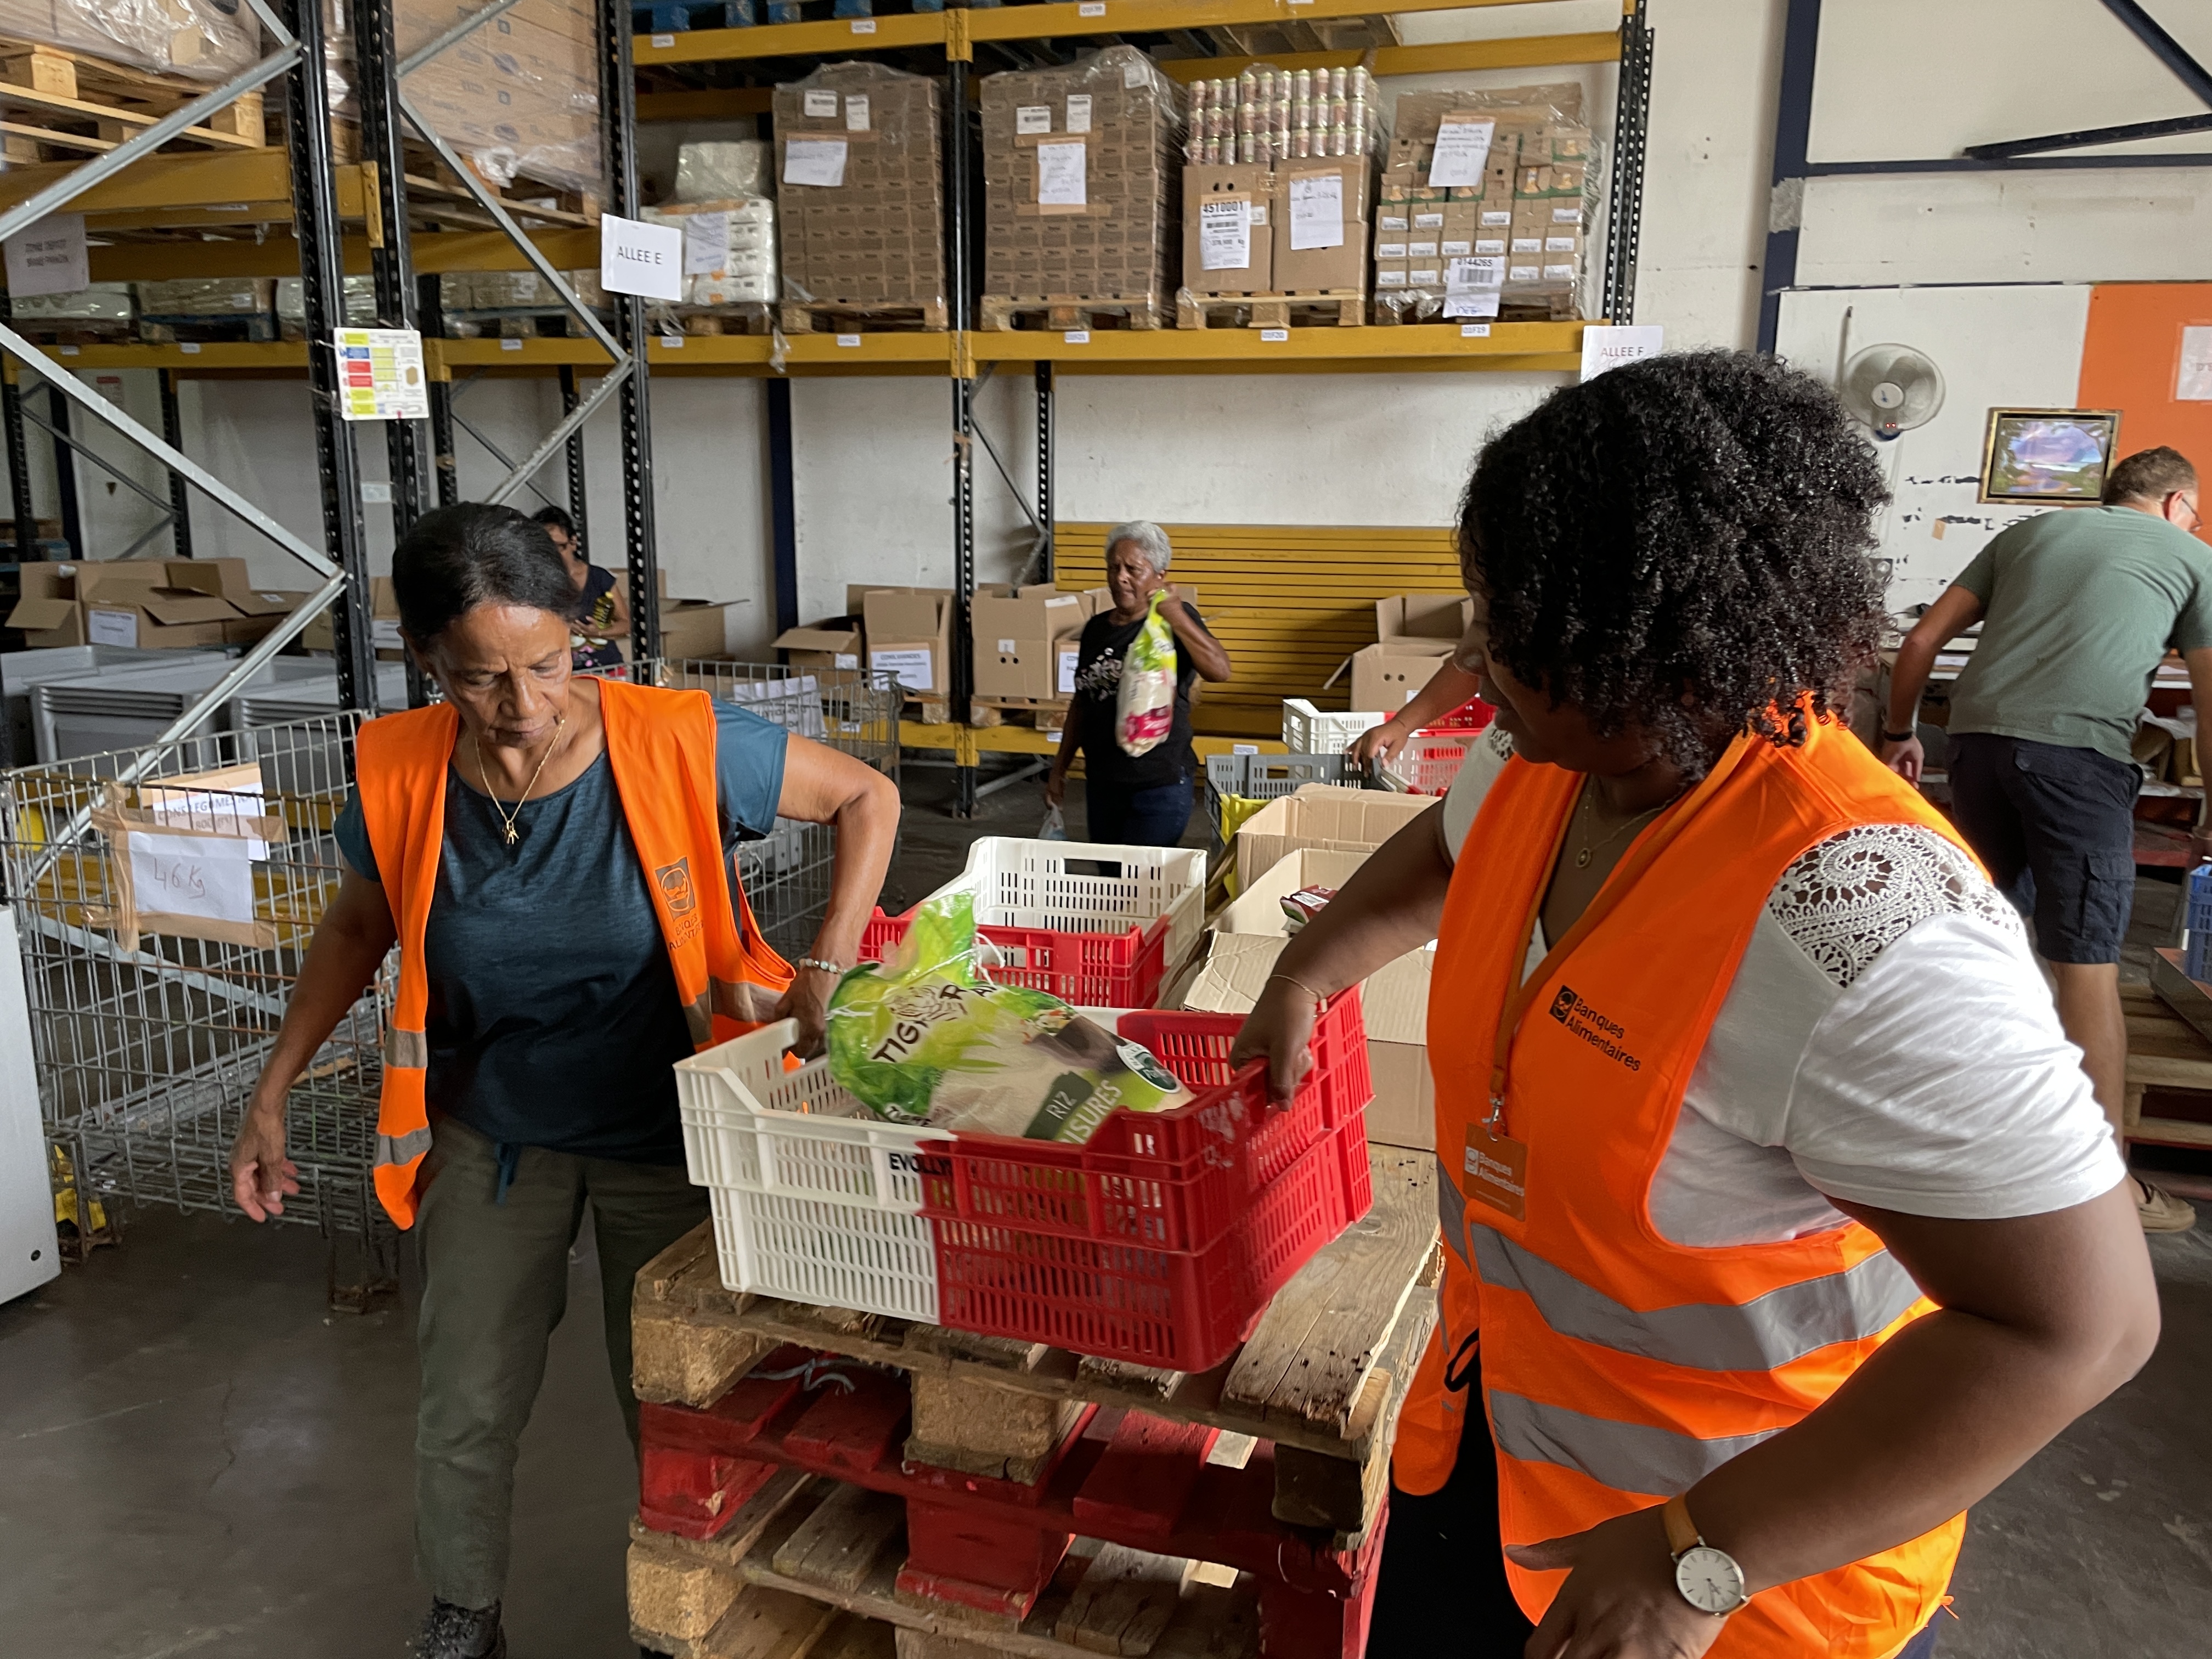 La Réunion : La Banque Alimentaire des Mascareignes récolte près de 25 tonnes lors de sa collecte